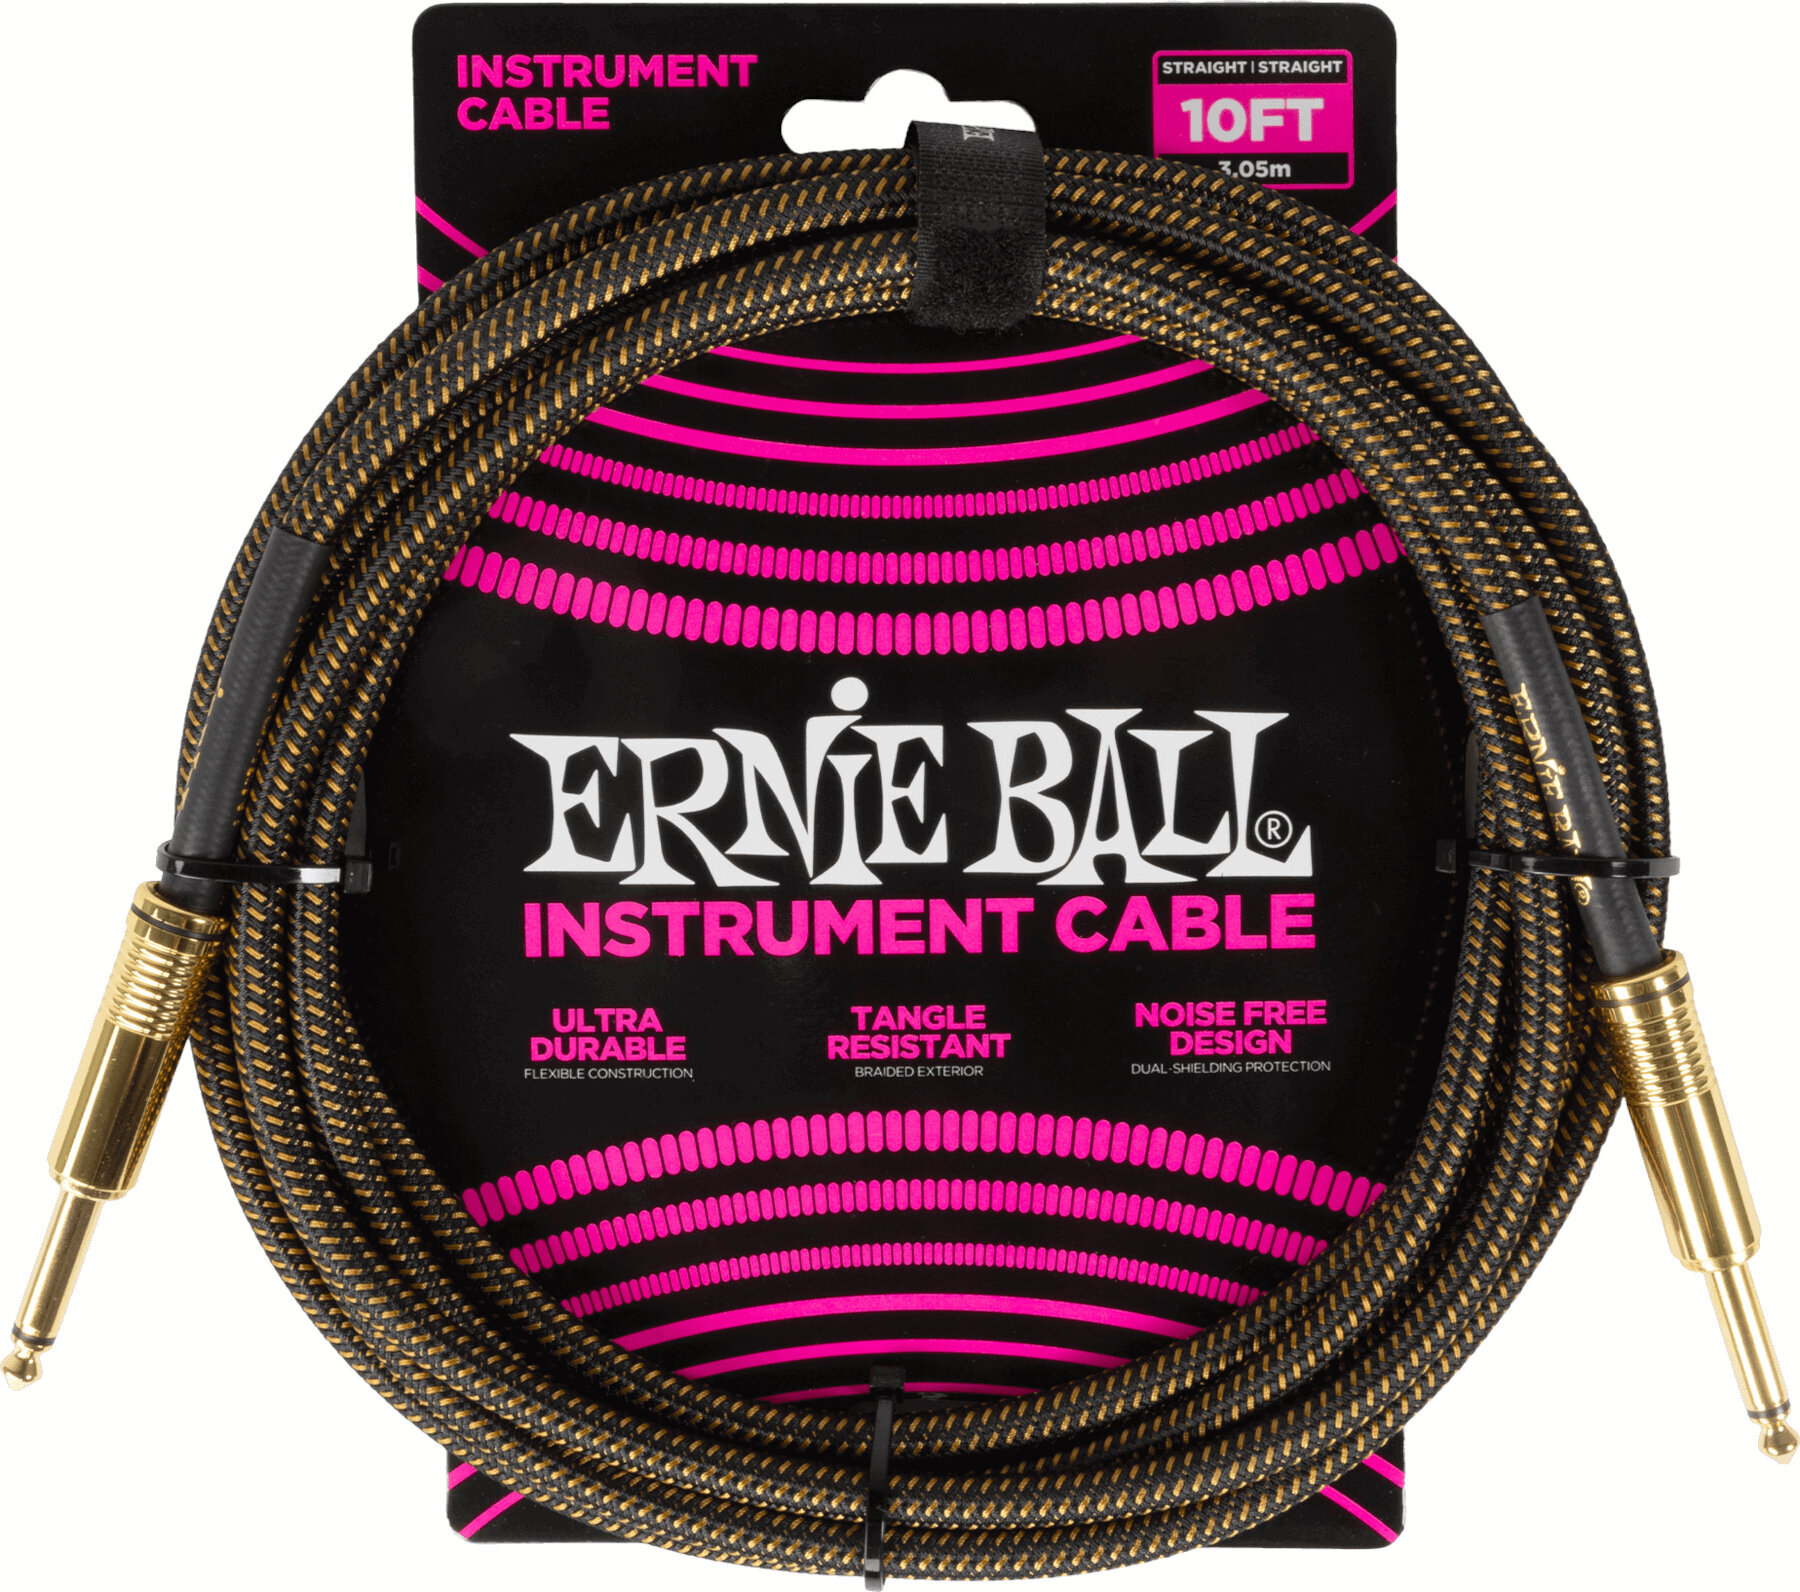 Câble pour instrument Ernie Ball Braided Instrument Cable Straight/Straight Brun 3 m Droit - Droit